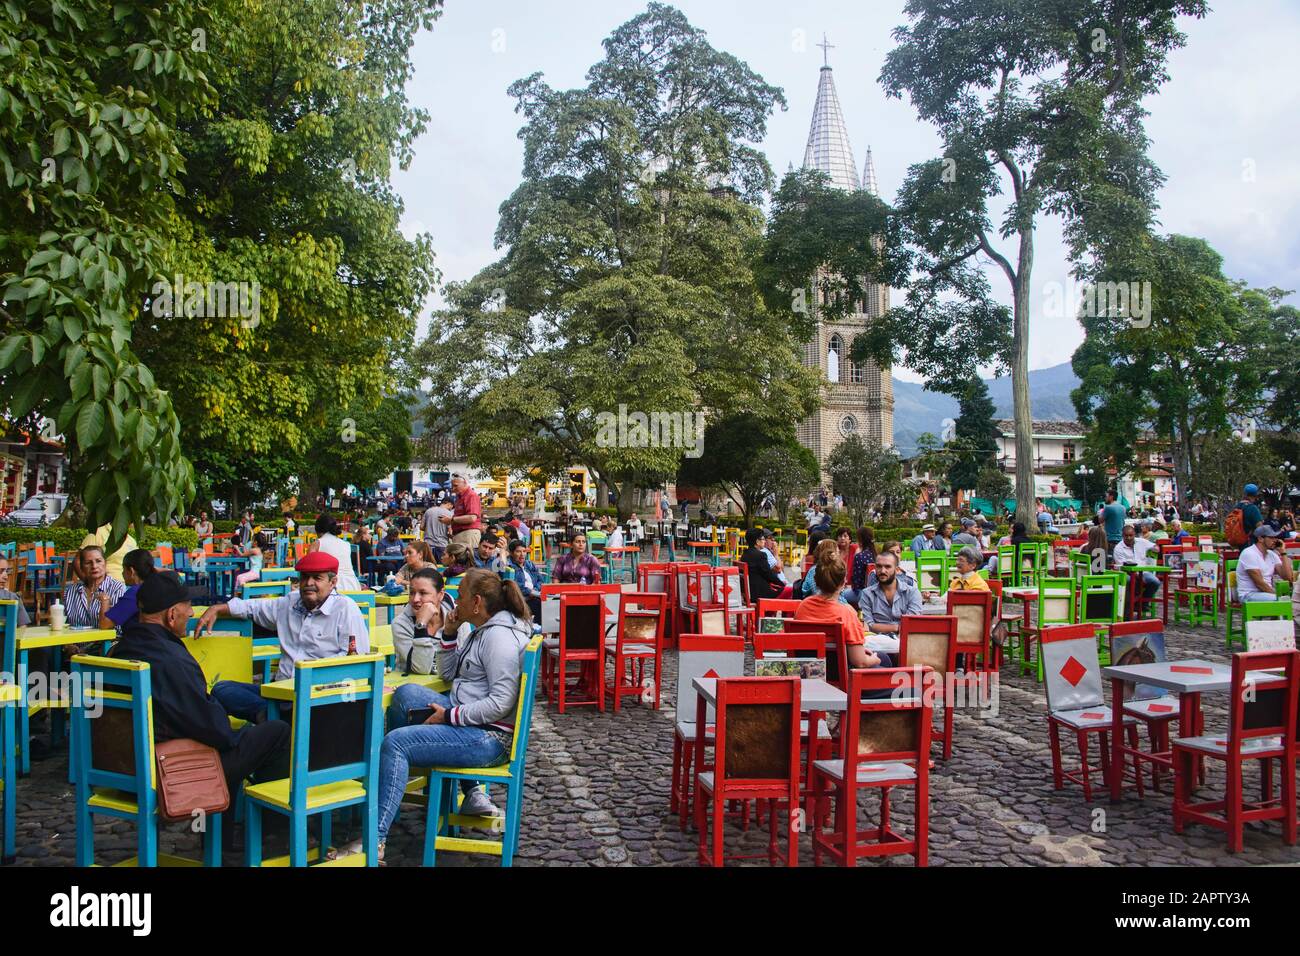 Dégustez un café sur la place principale du jardin coloré, Antioquia, Colombie Banque D'Images